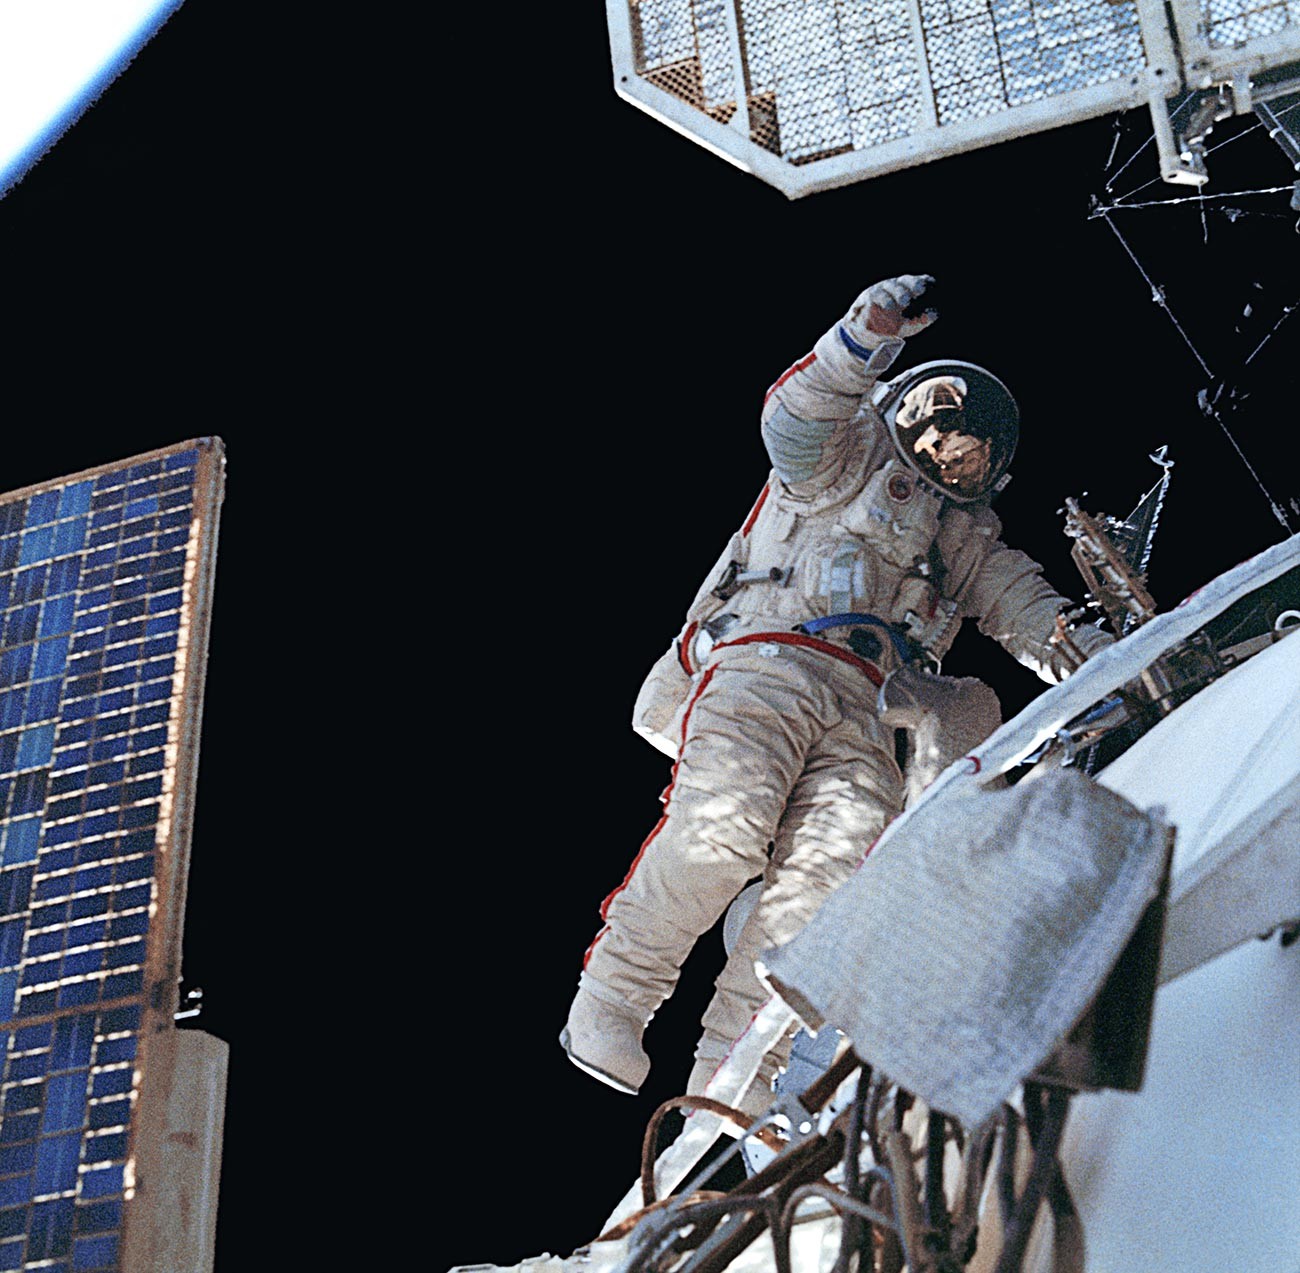 El cosmonauta Alexánder Volkov durante un paseo espacial.
